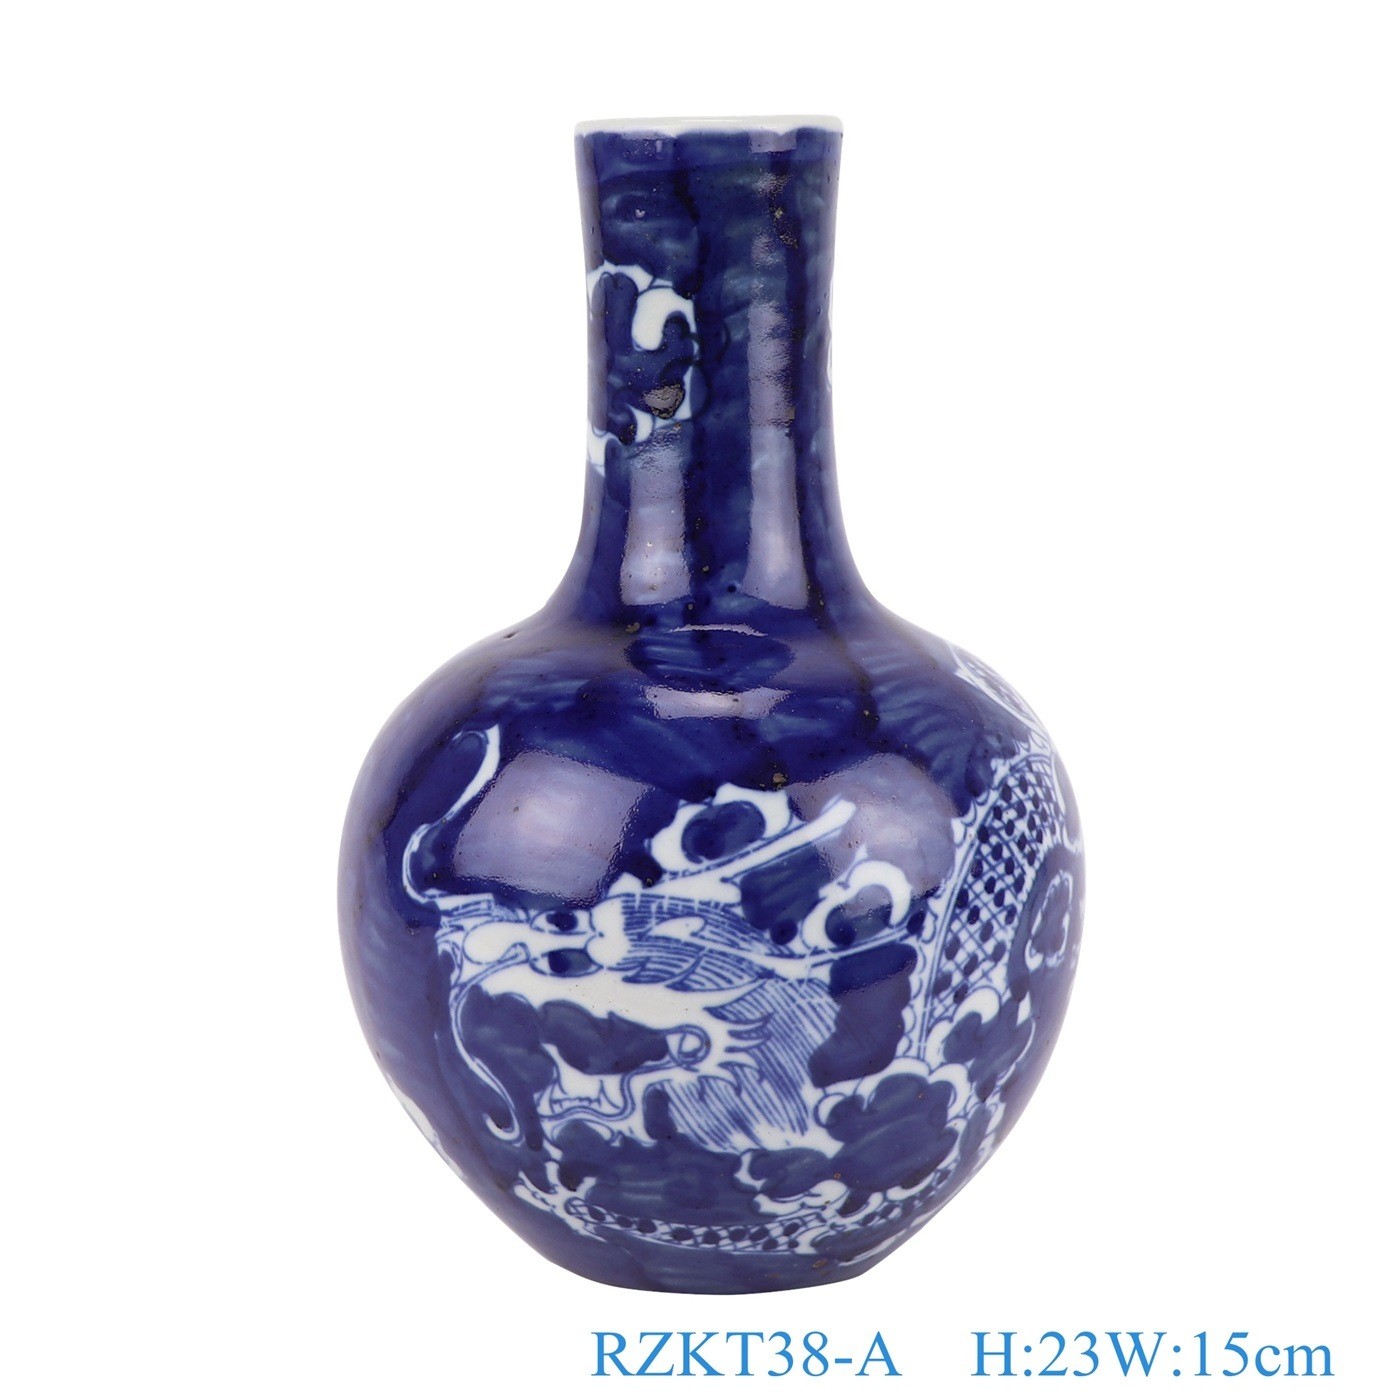 Jingdezhen Porcelain Plum and Animal Pattern Chinese Blue and White Porcelain Globular Vase